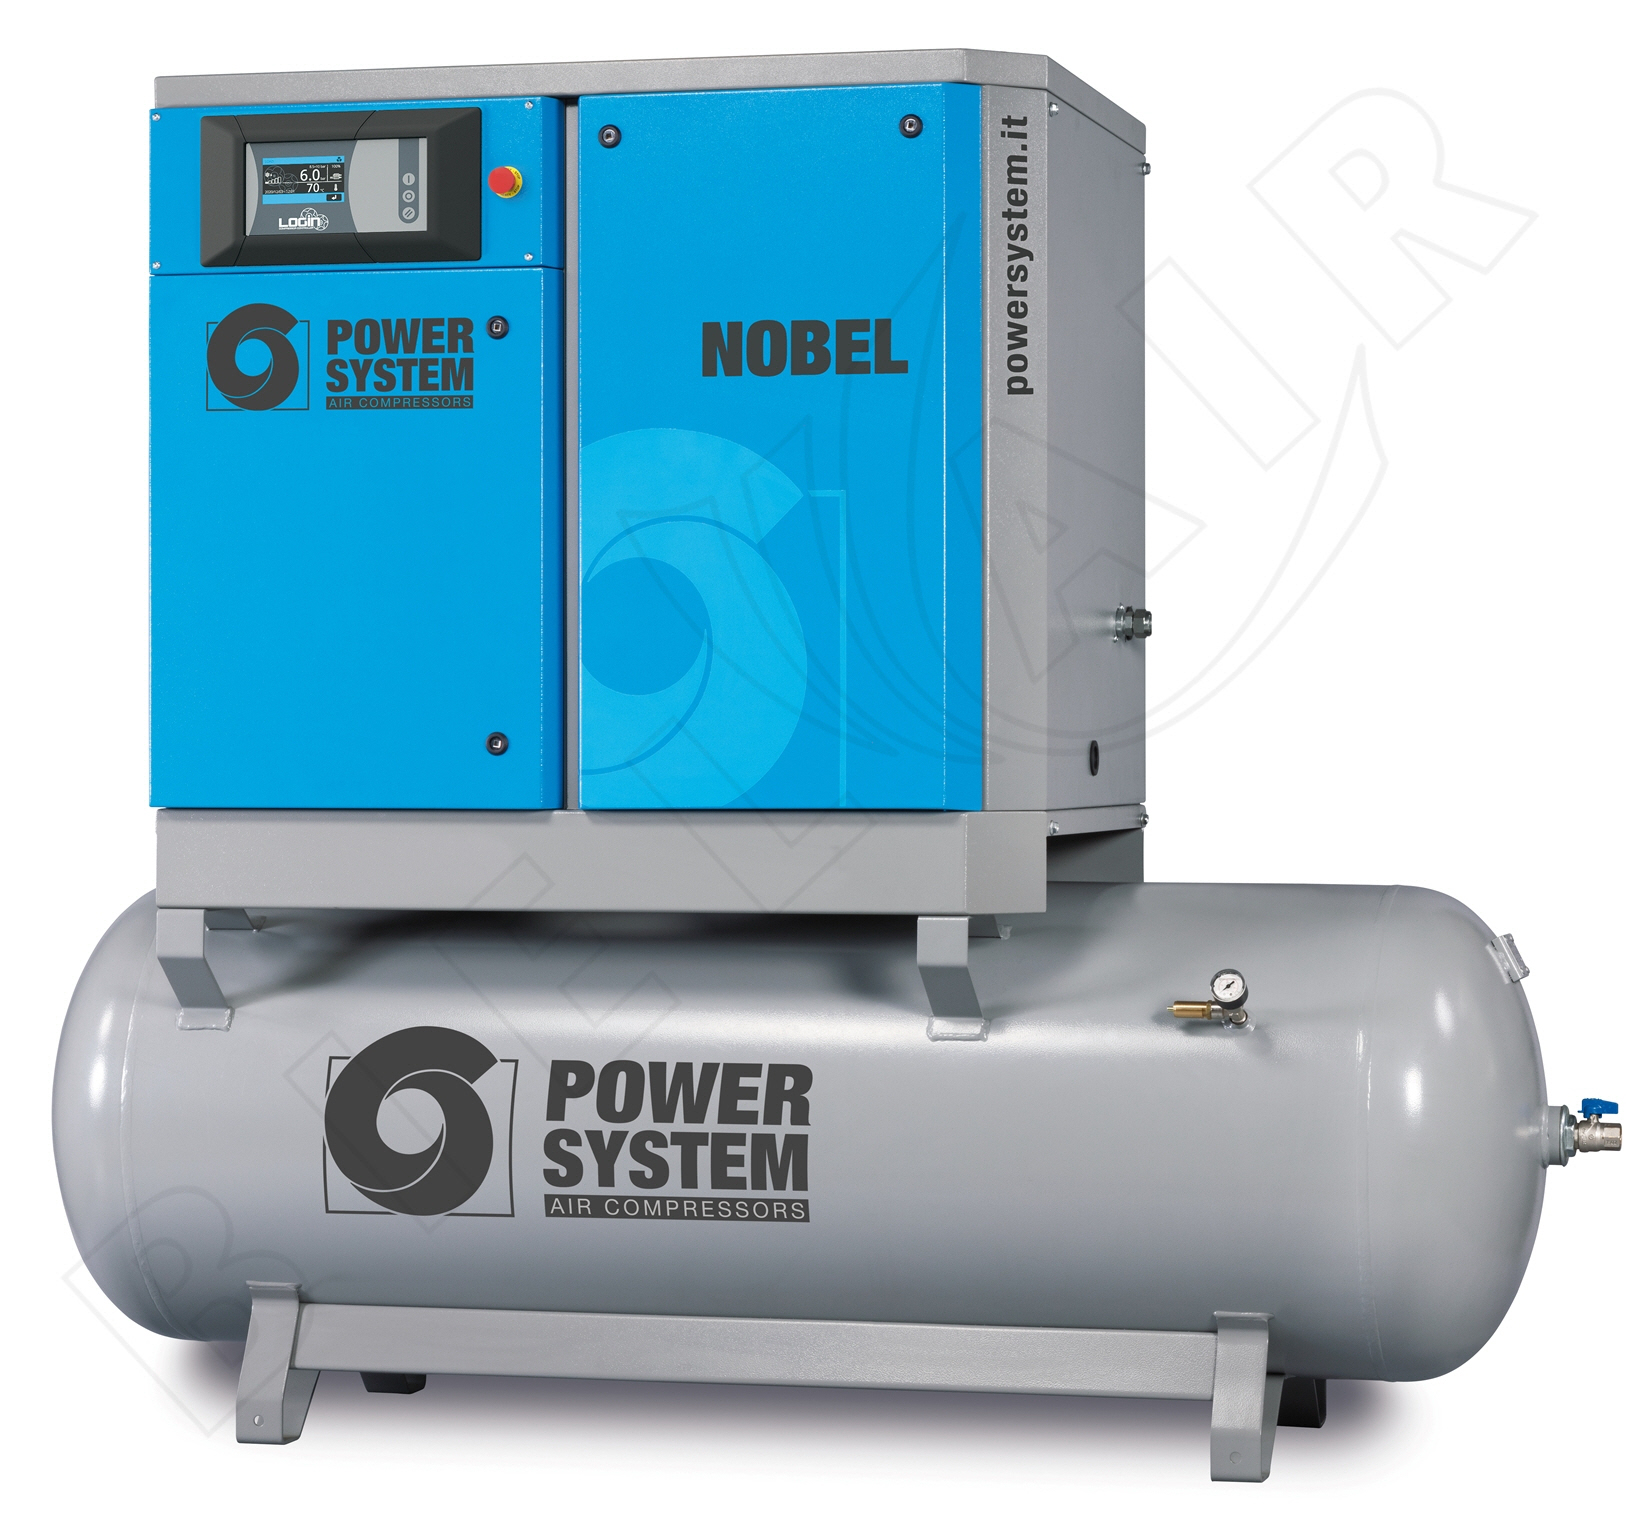 POWERSYSTEM Schraubenkompressor NOBEL 11-10 500 (IE3) LOGIN Standard mit Behälter